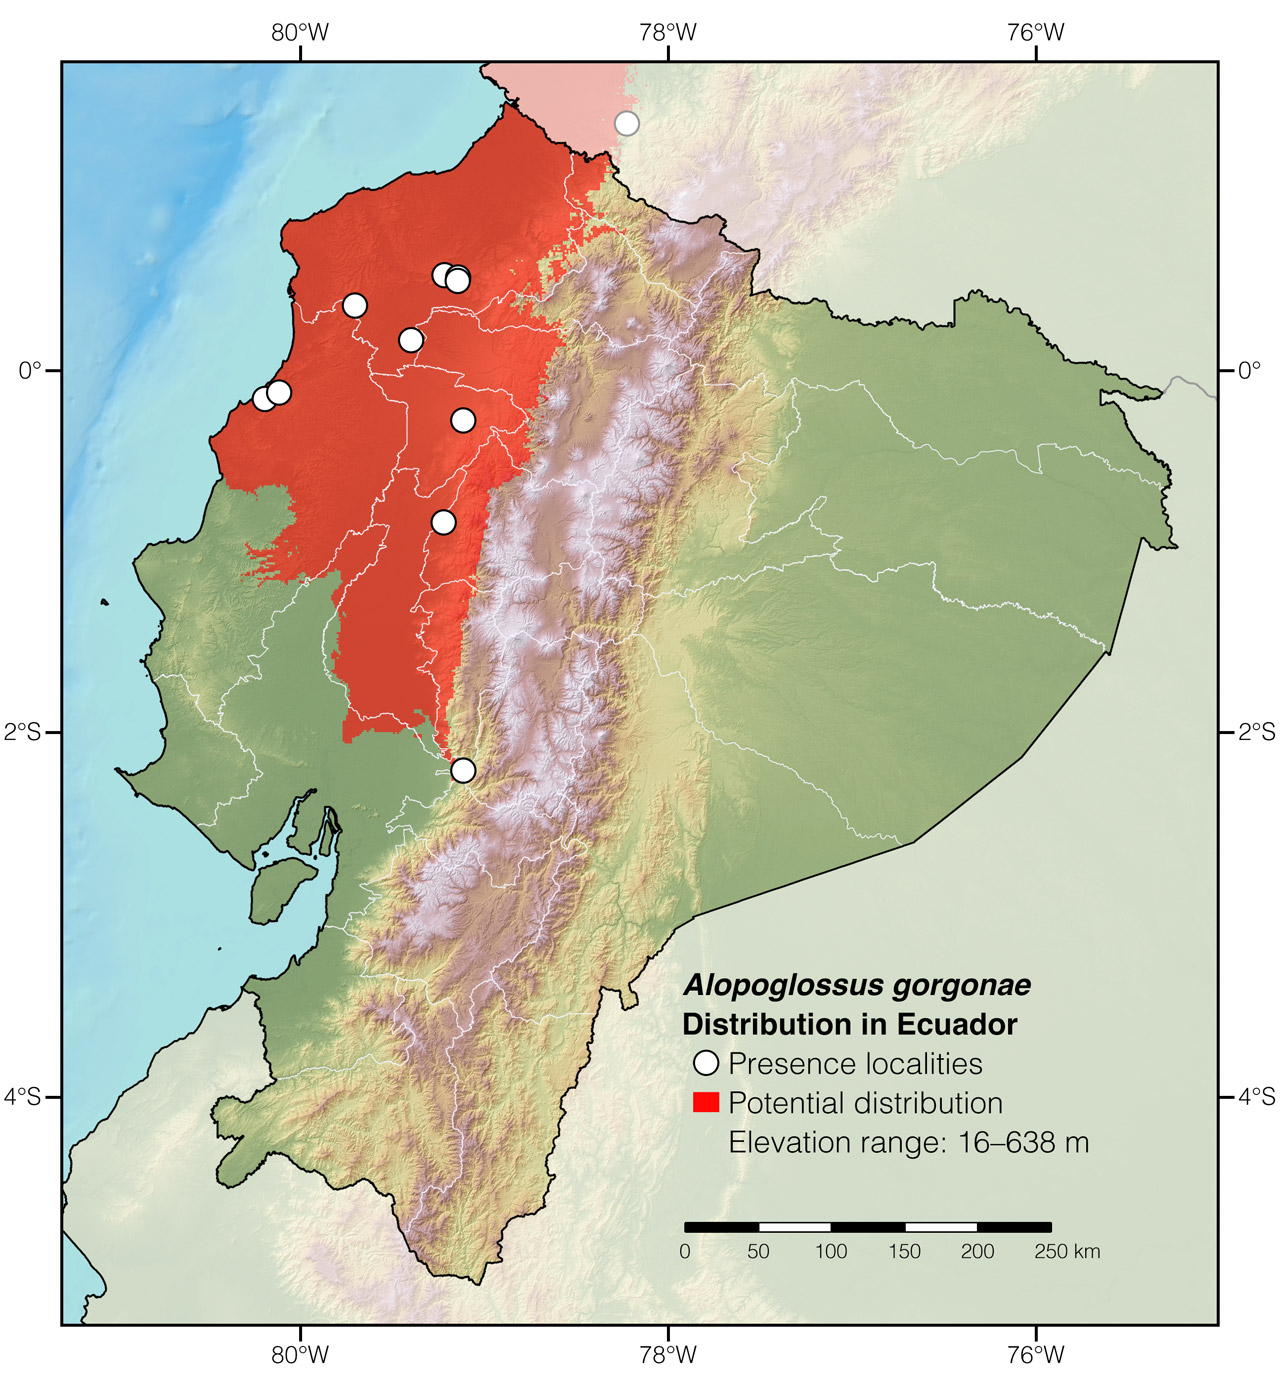 Distribution of Alopoglossus gorgonae in Ecuador